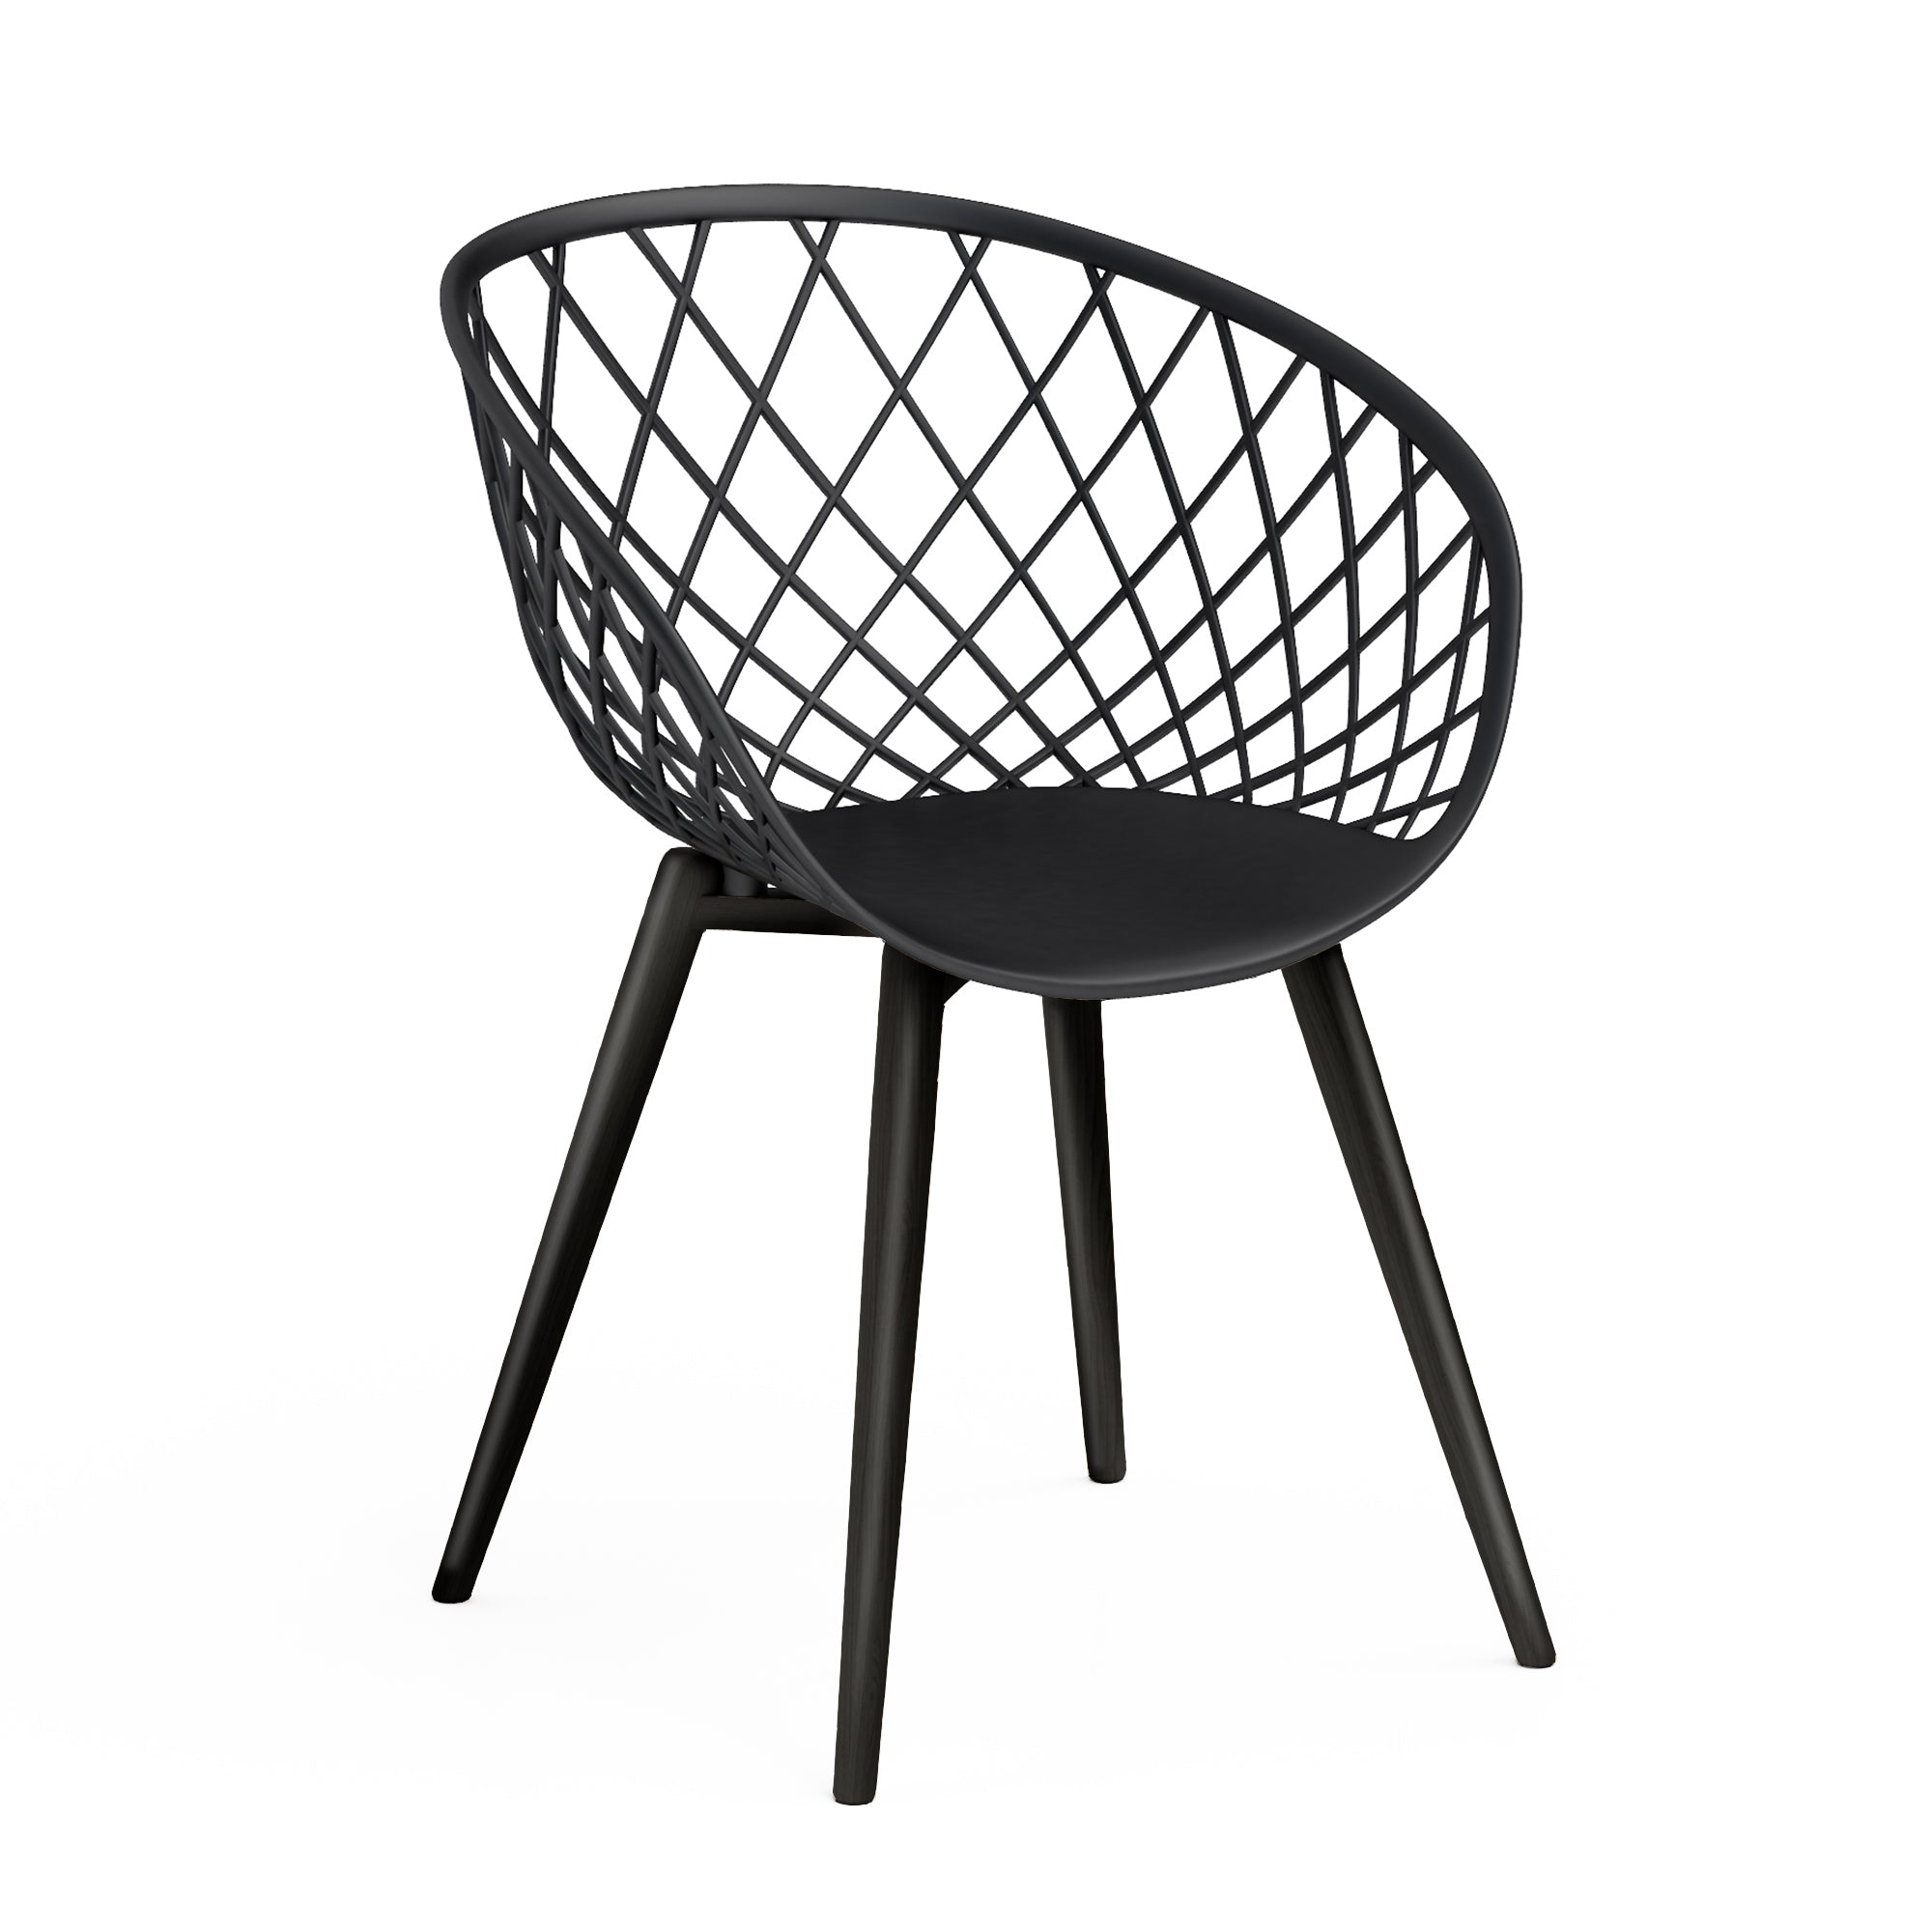 Kurv™ Series Bistro Table + Kurv™ Chair - Set of 2